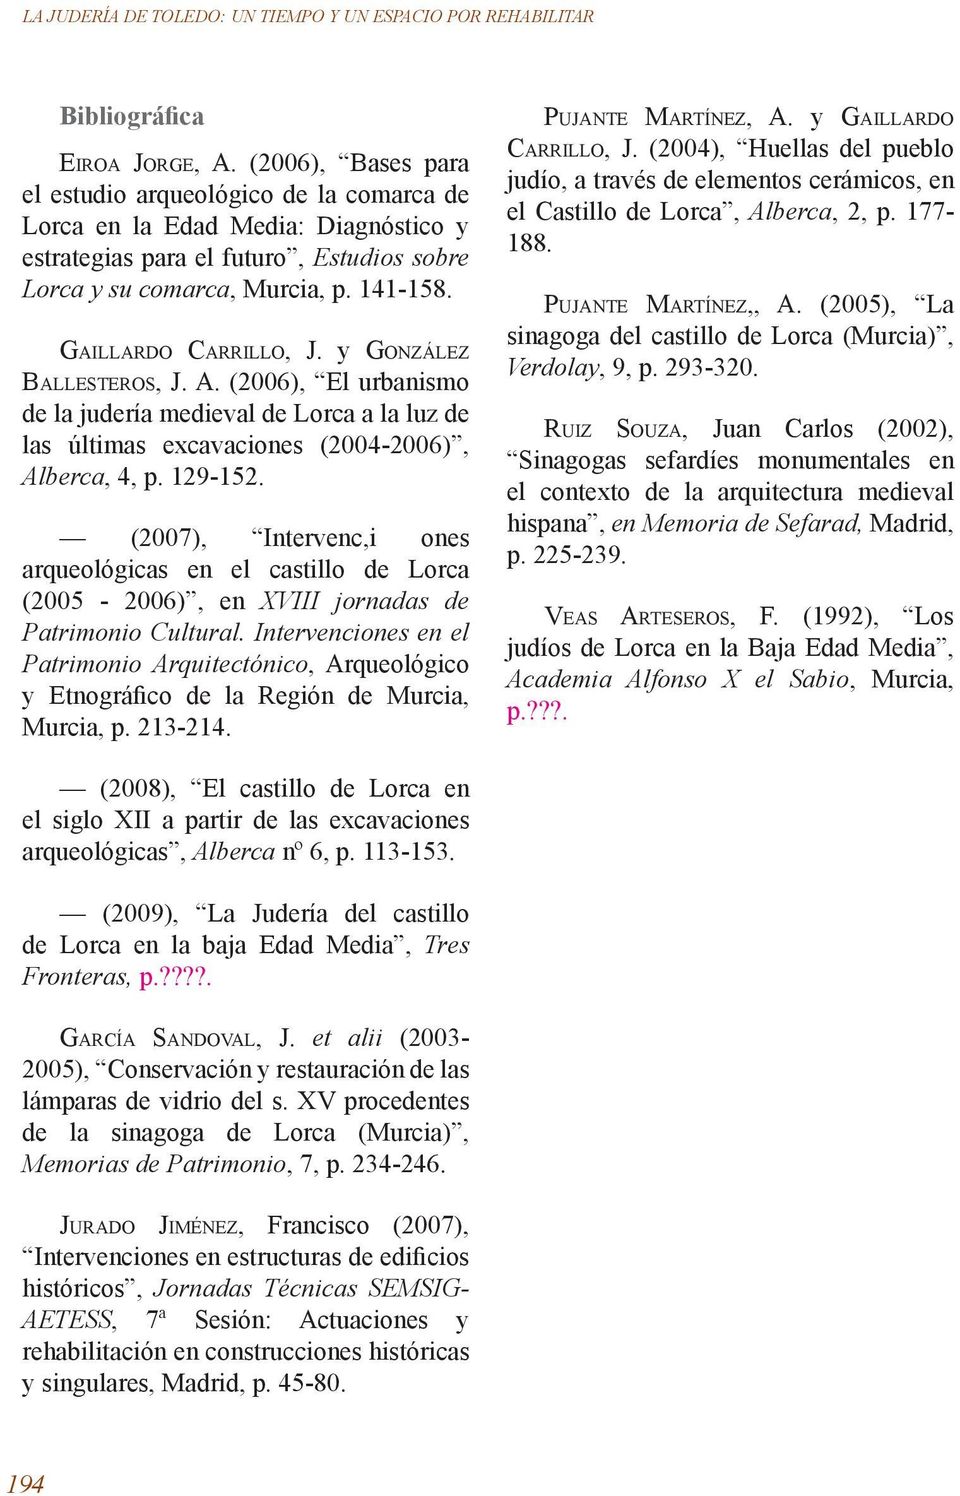 Gaillardo Carrillo, J. y González Ballesteros, J. A. (2006), El urbanismo de la judería medieval de Lorca a la luz de las últimas excavaciones (2004-2006), Alberca, 4, p. 129-152.